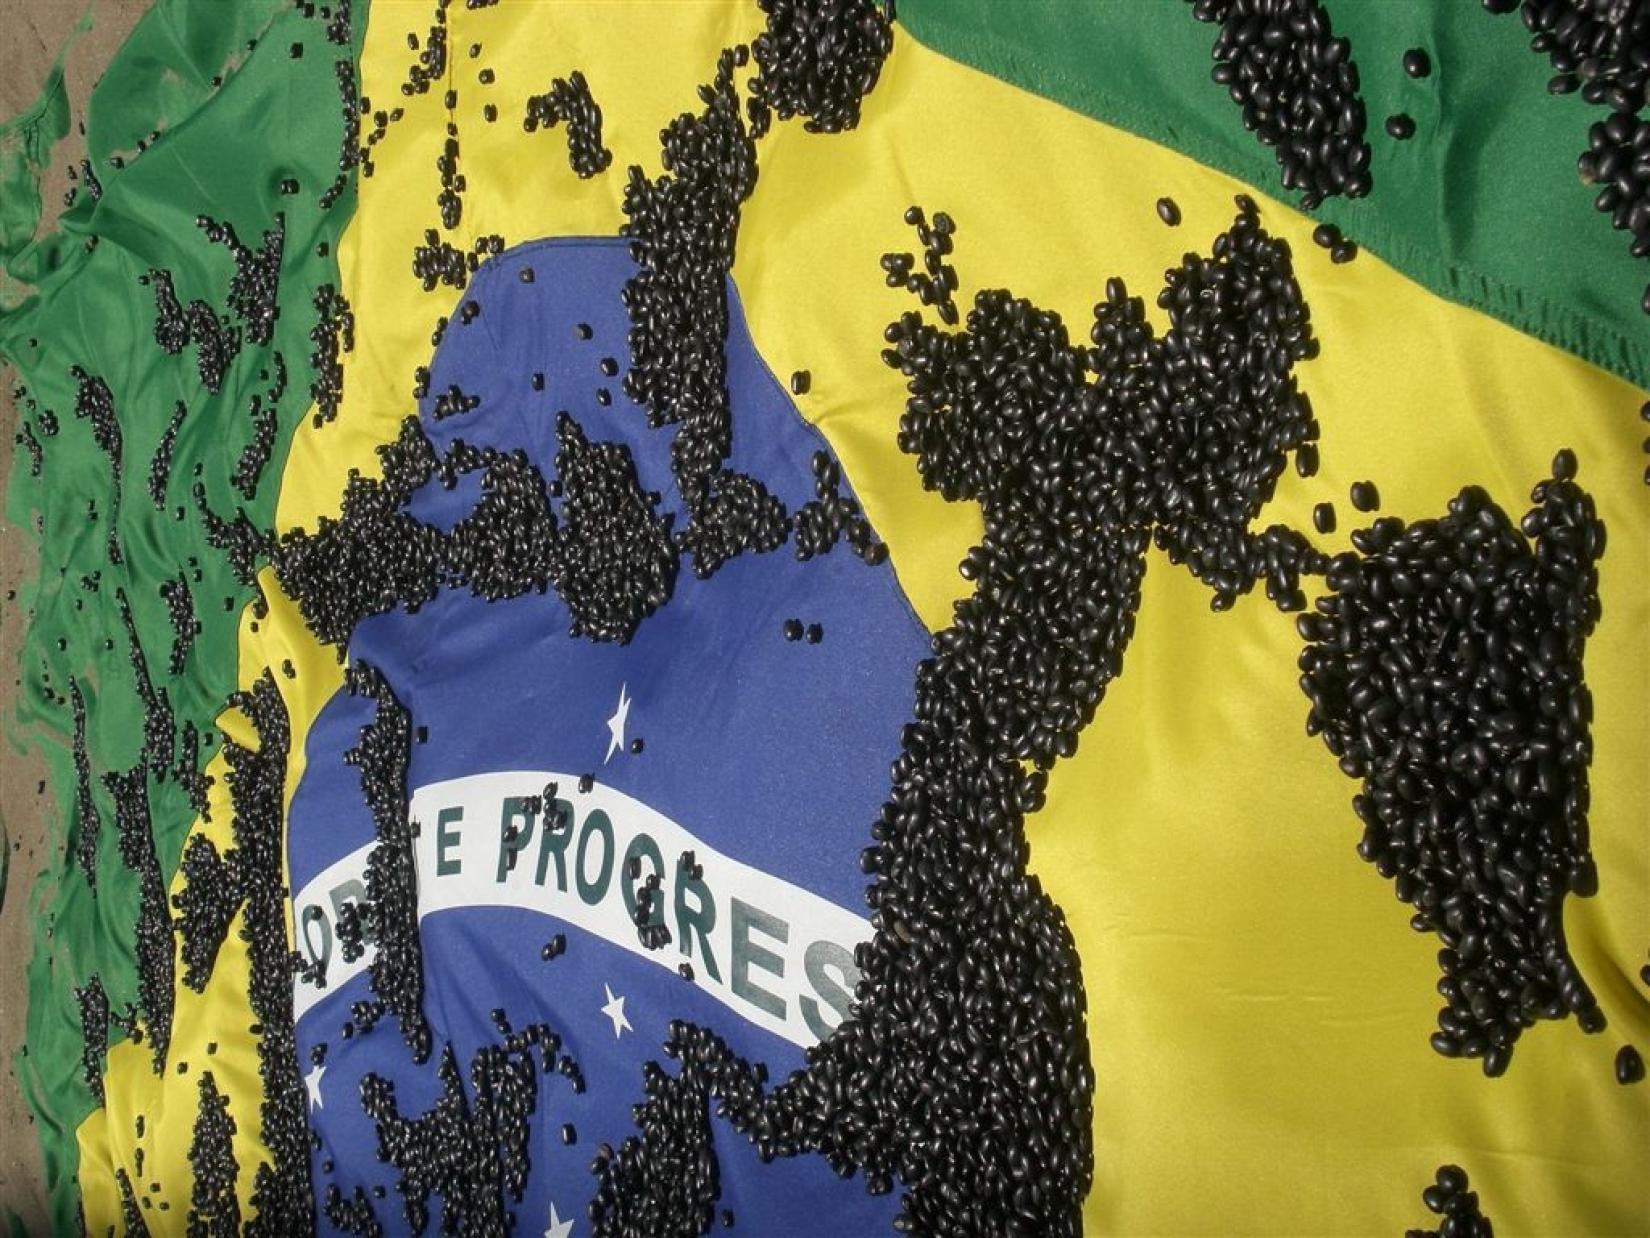 Protesto no Rio de Janeiro chama a atenção comparando a alta cifra de homicídios da cidade a grãos de feijão